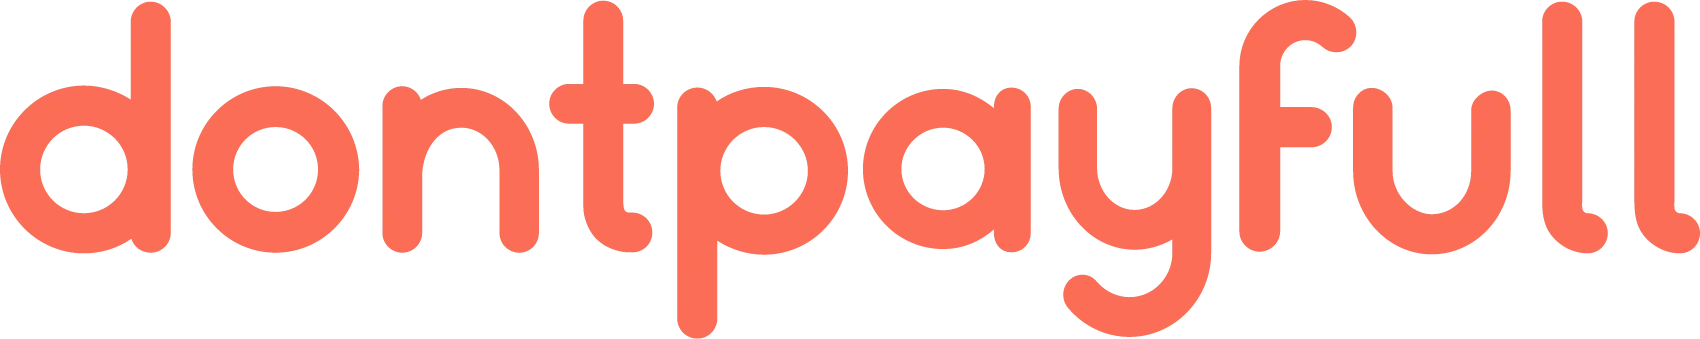 dontpayfull logo